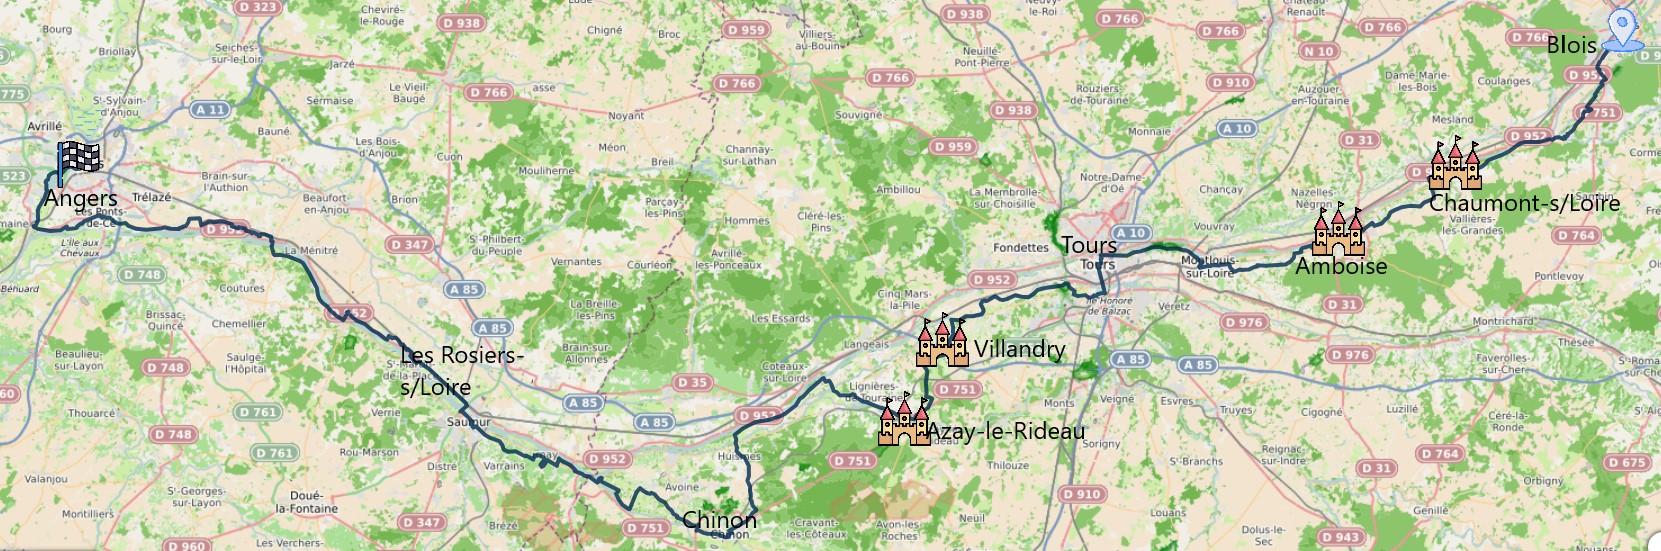 Carte itinéraire du séjour De Blois à Angers en 6 jours